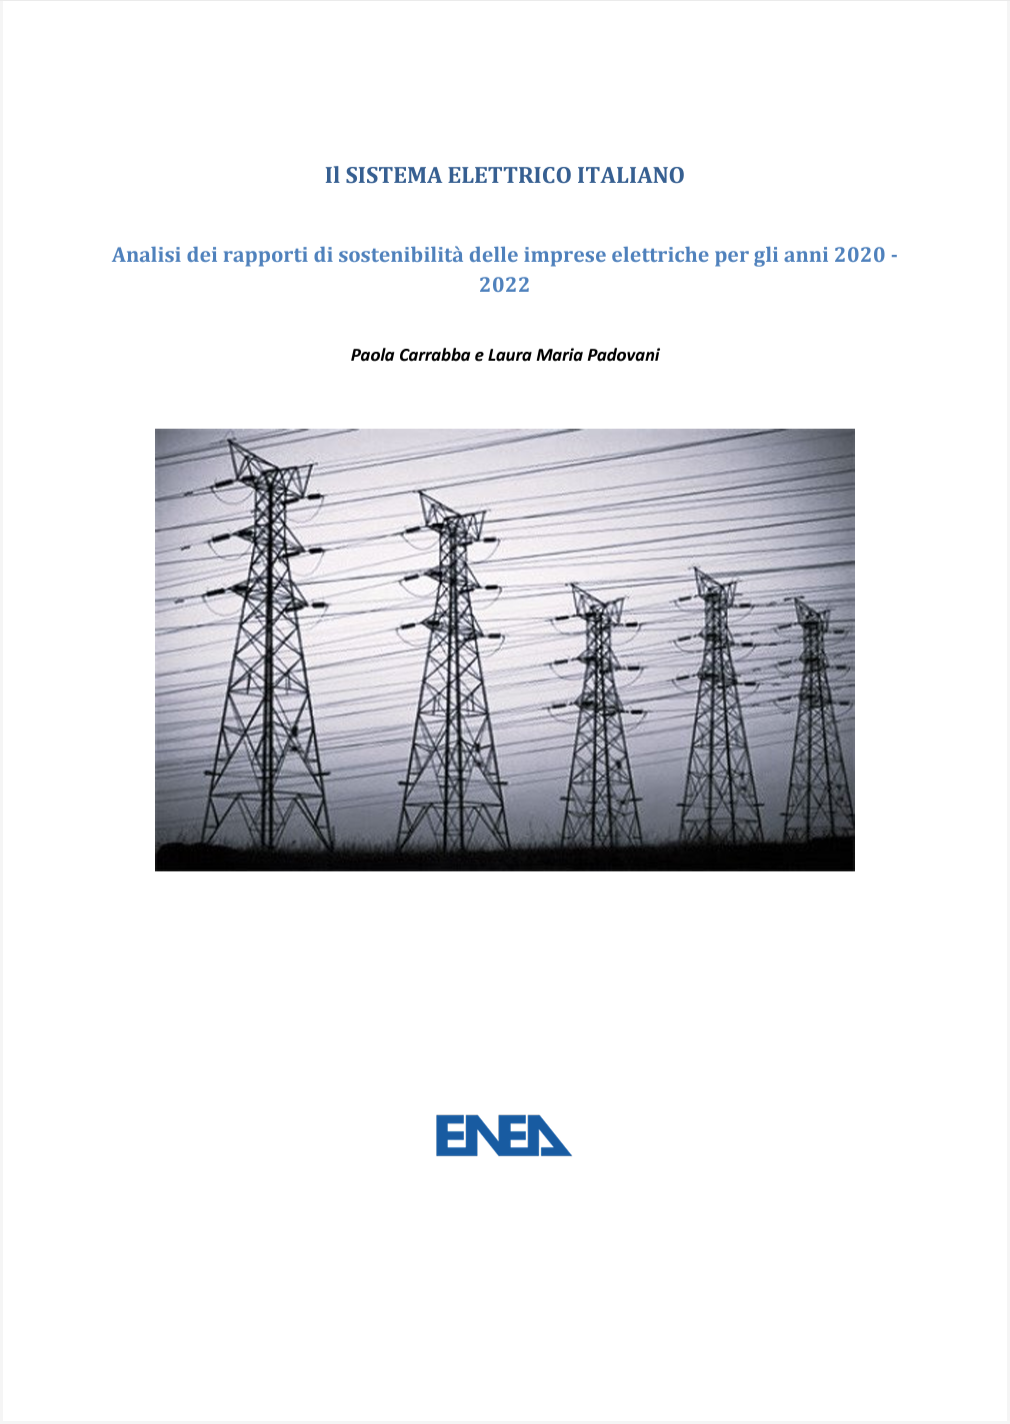 Il sistema elettrico italiano   Analisi rapporti di sostenibilit  imprese elettriche 2020   2022